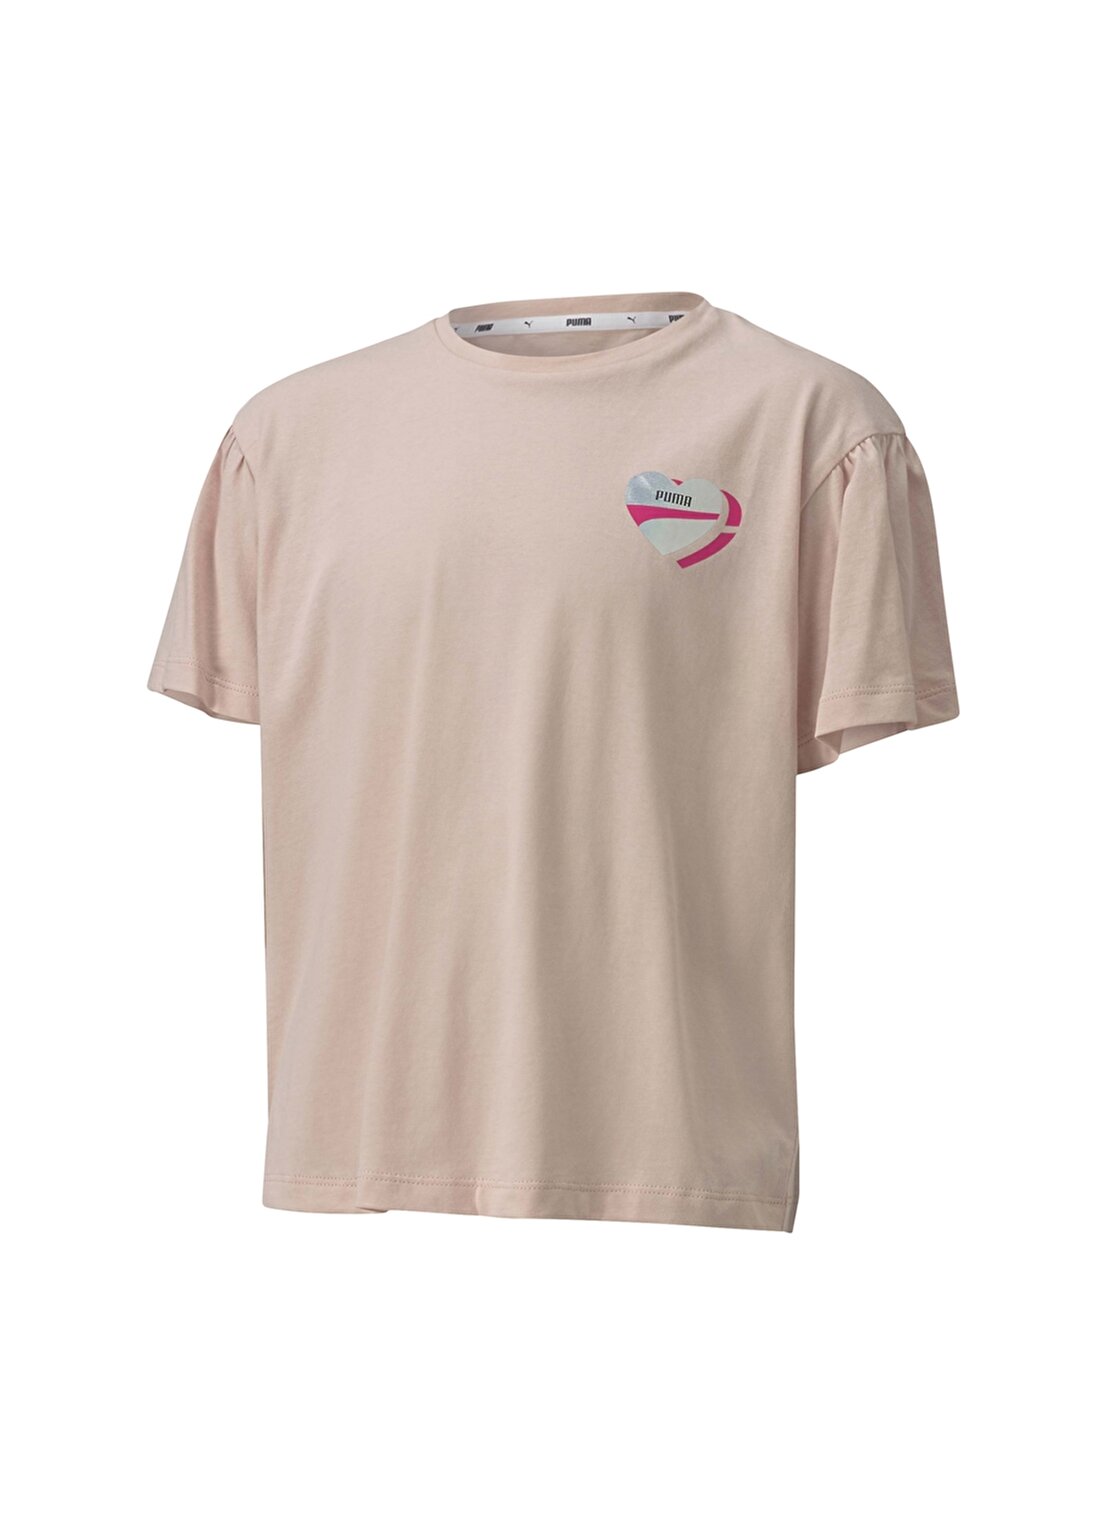 Puma Pembe Kız Çocuk T-Shirt